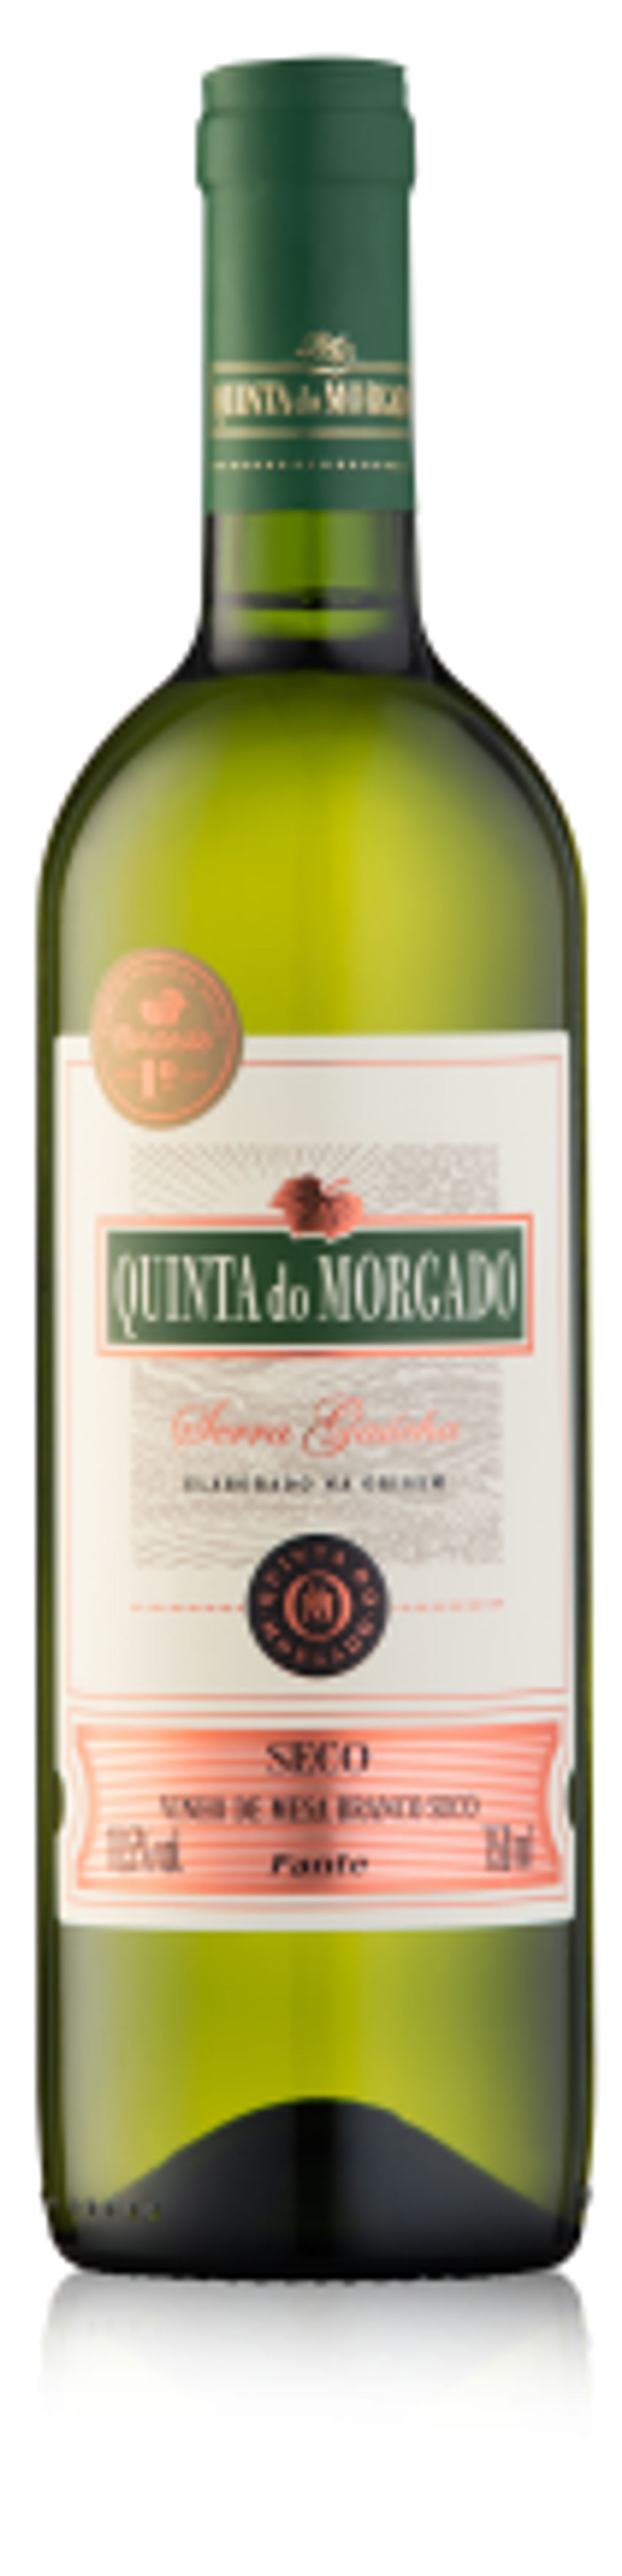 Vinho Brasileiro Branco Seco  Quinta do Morgado Serra Gaúcha Garrafa 750ml